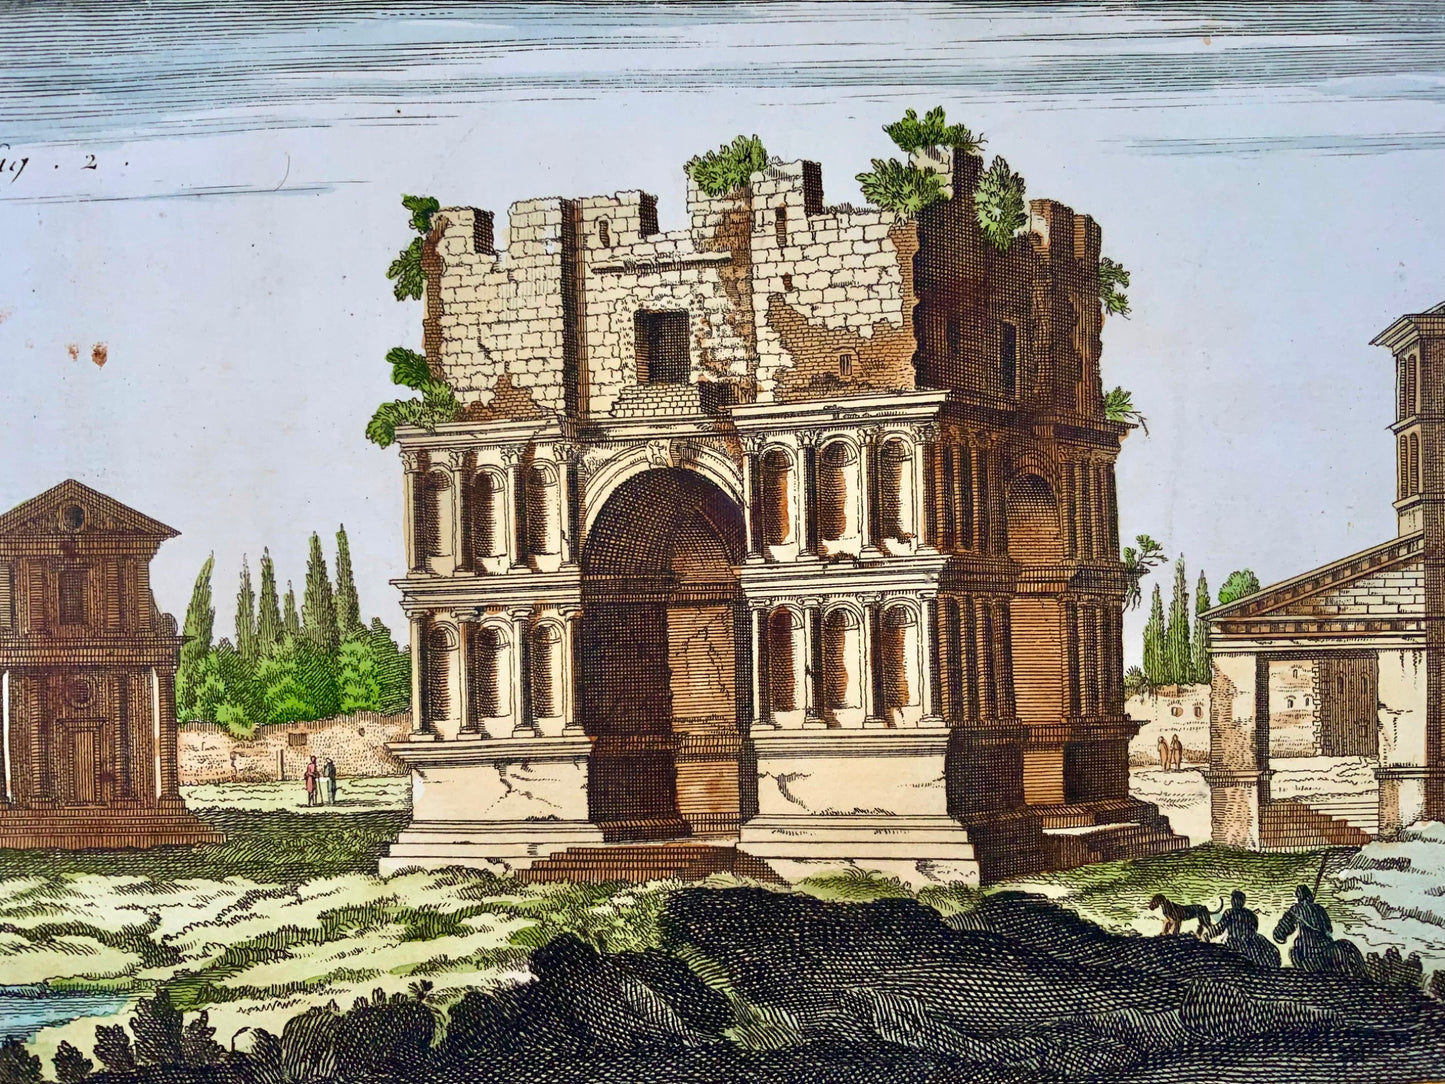 1777 Diderot, Italia: Roma, Colonna di Traiano e Arco di Giano, foglio alto